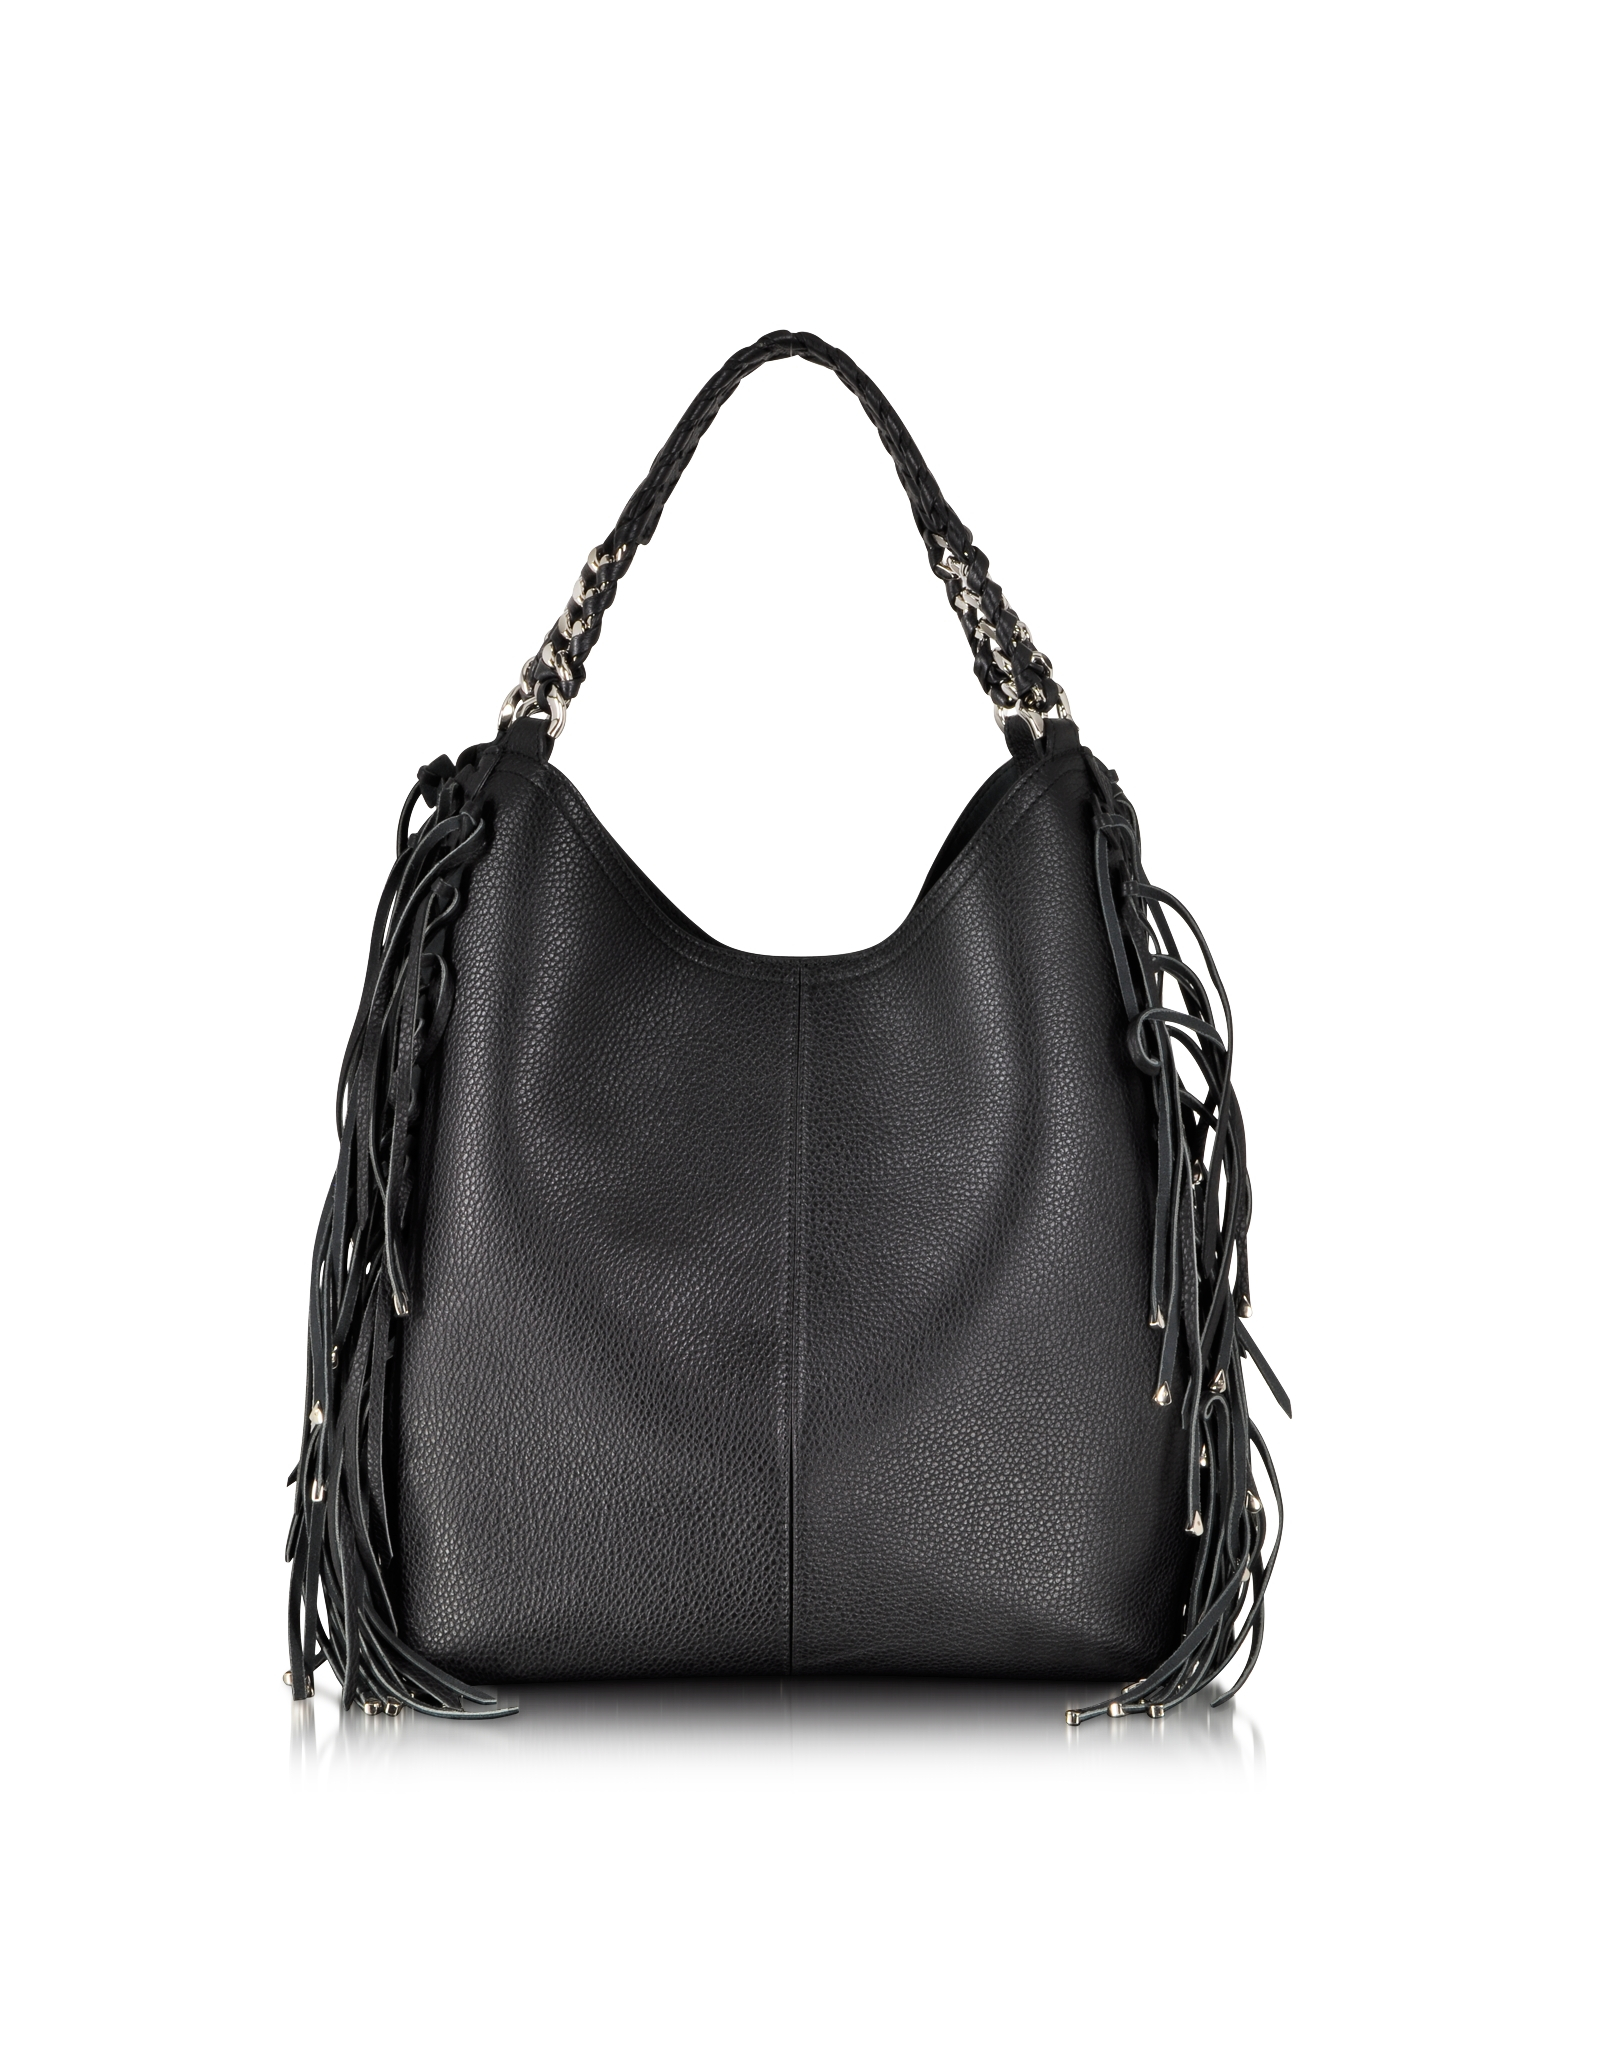 Lyst - Roberto Cavalli Regina Fringe Black Leather Hobo Bag in Black